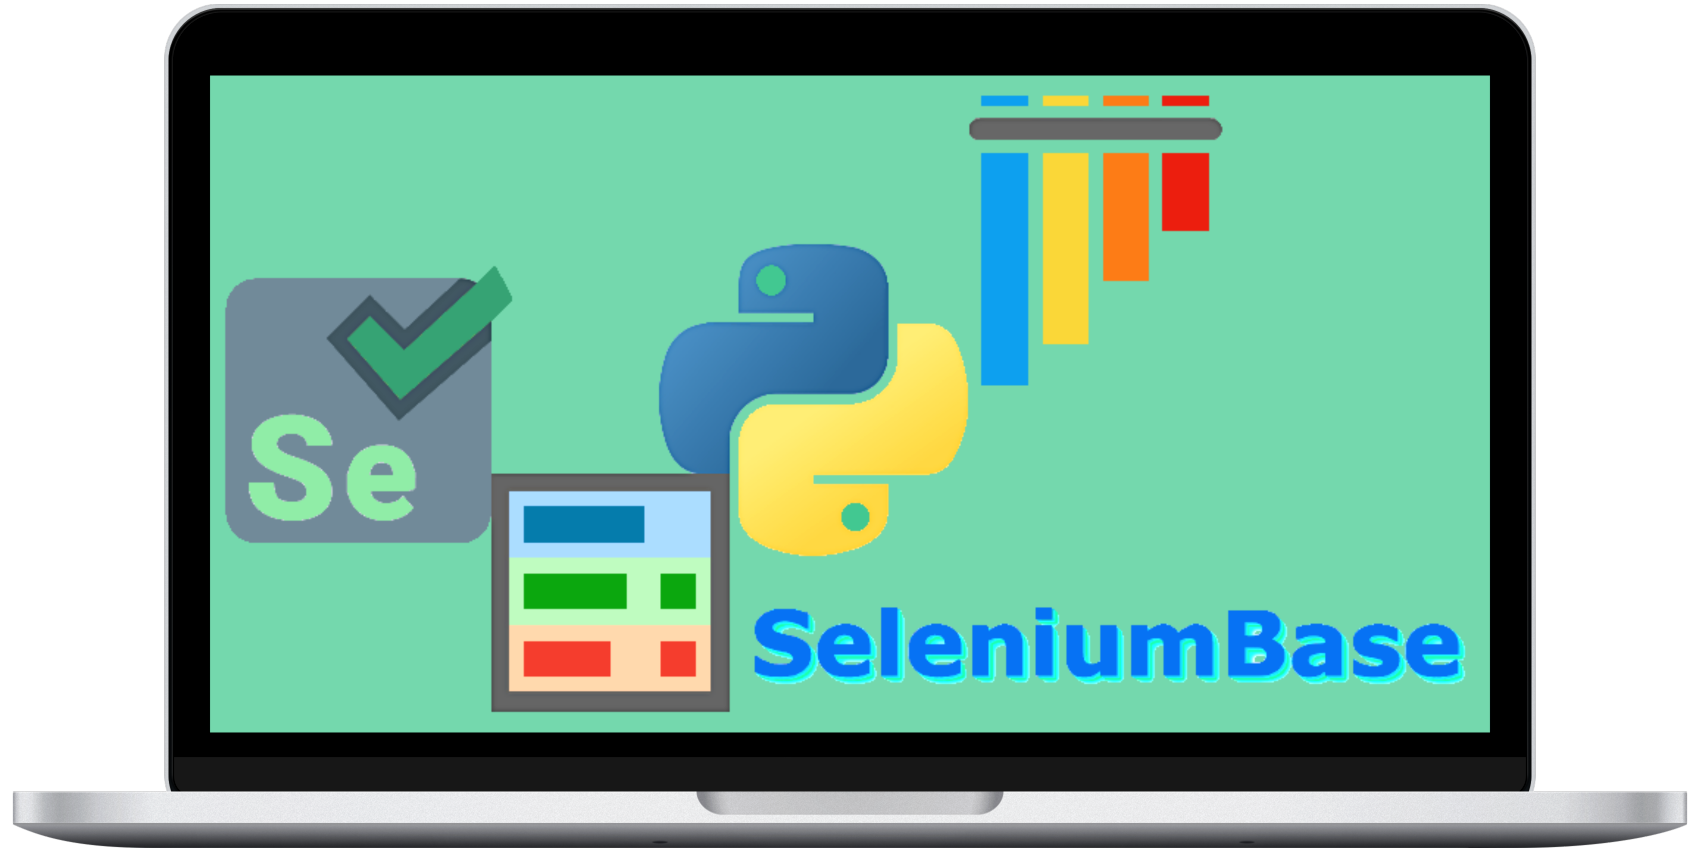 SeleniumBase